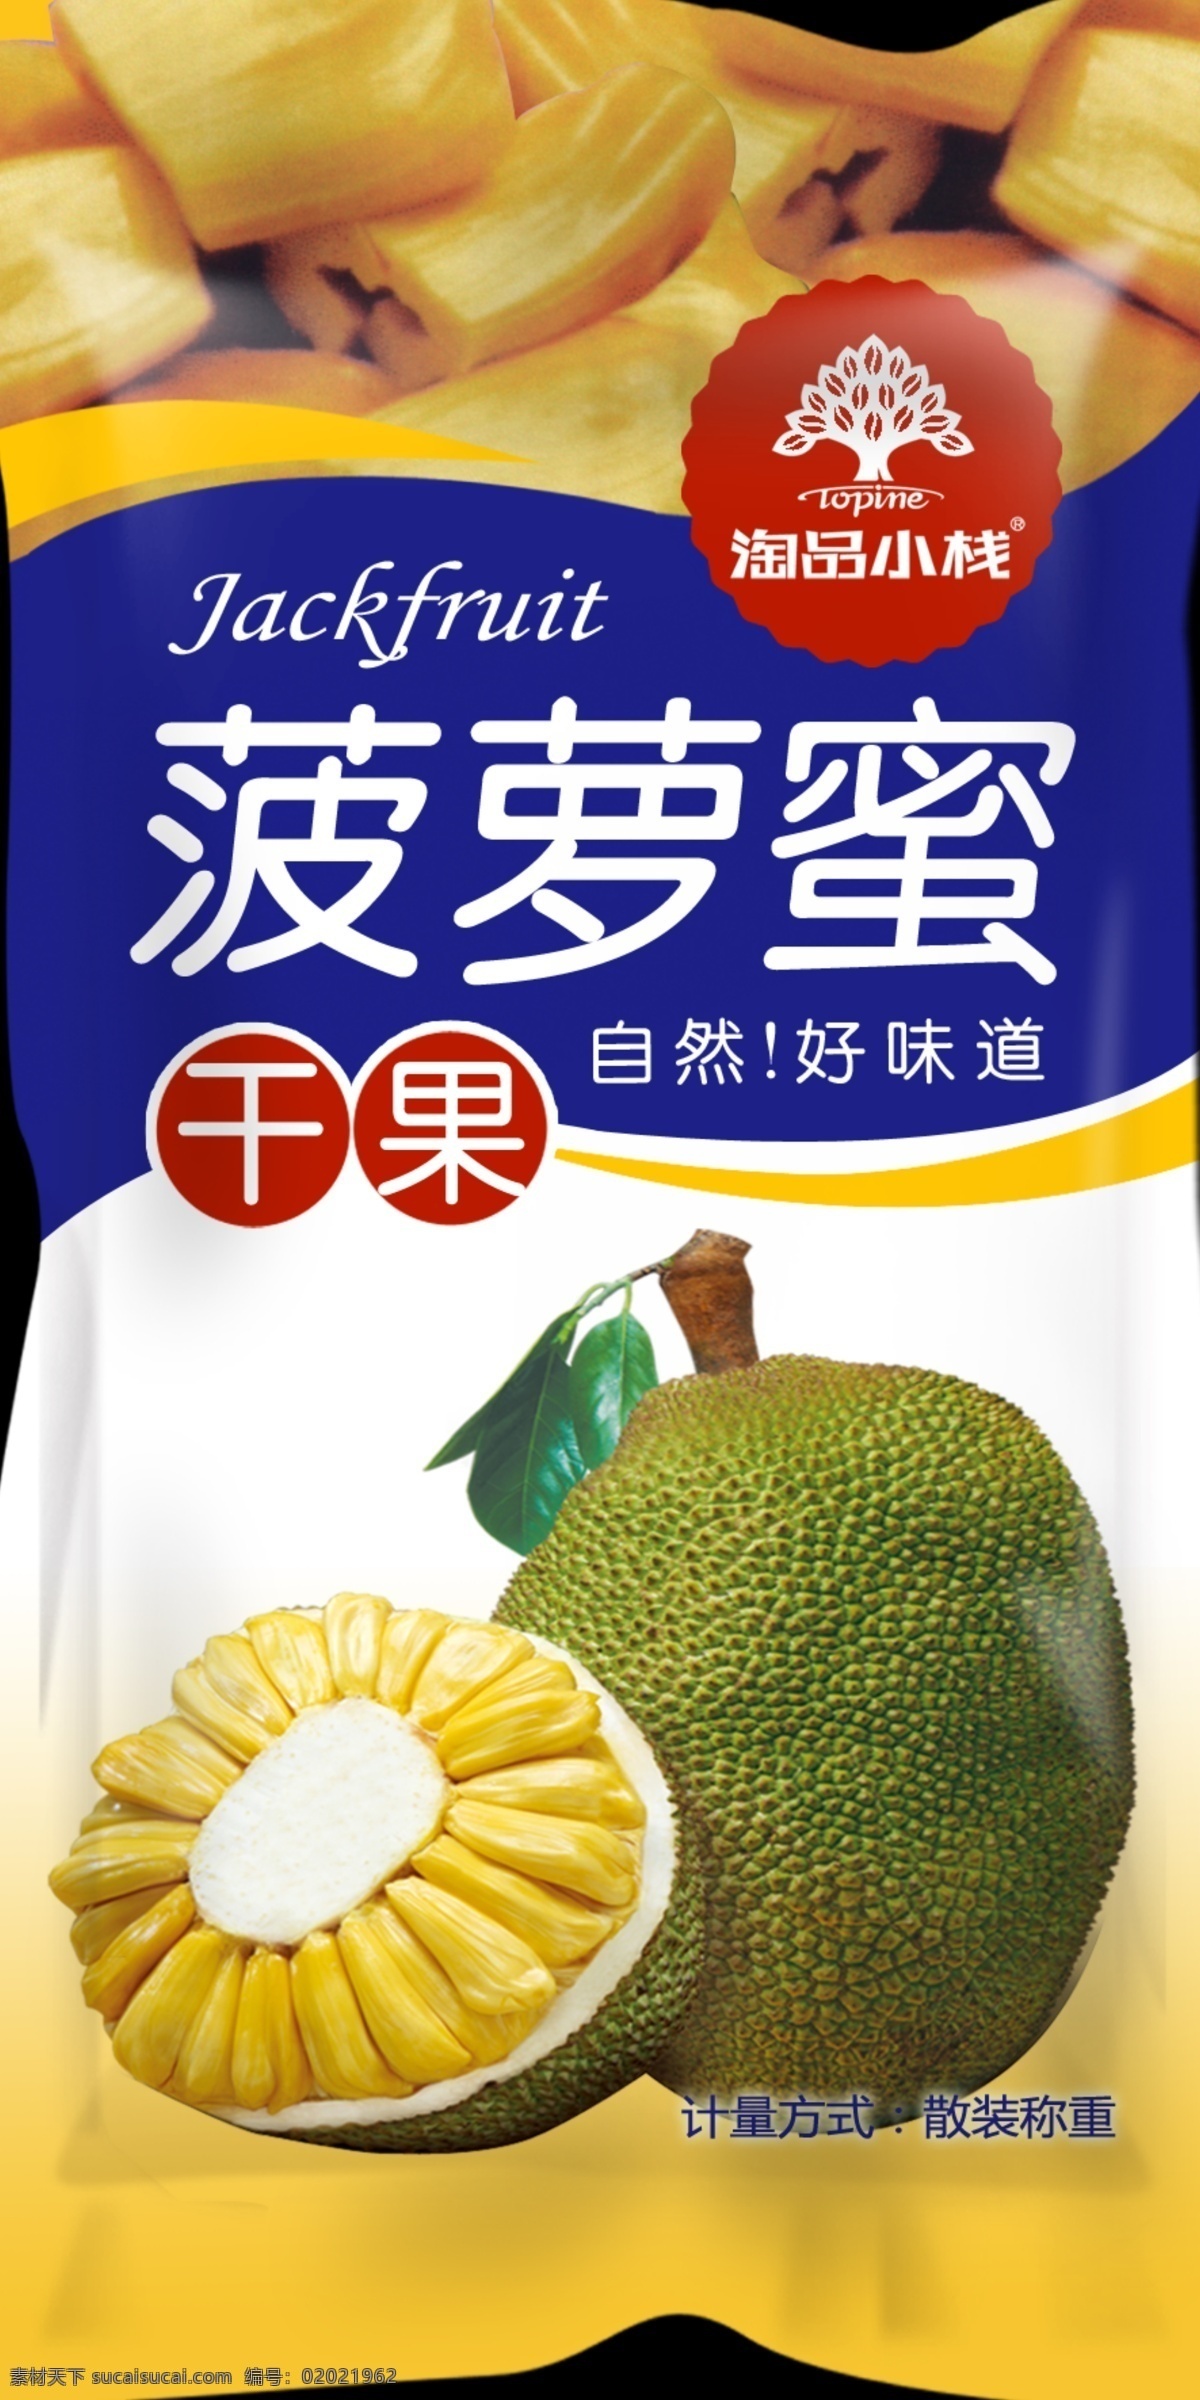 菠萝蜜 干果 包装袋 特产包装 食品袋 包装设计 广告设计模板 食品包装 源文件 黑色